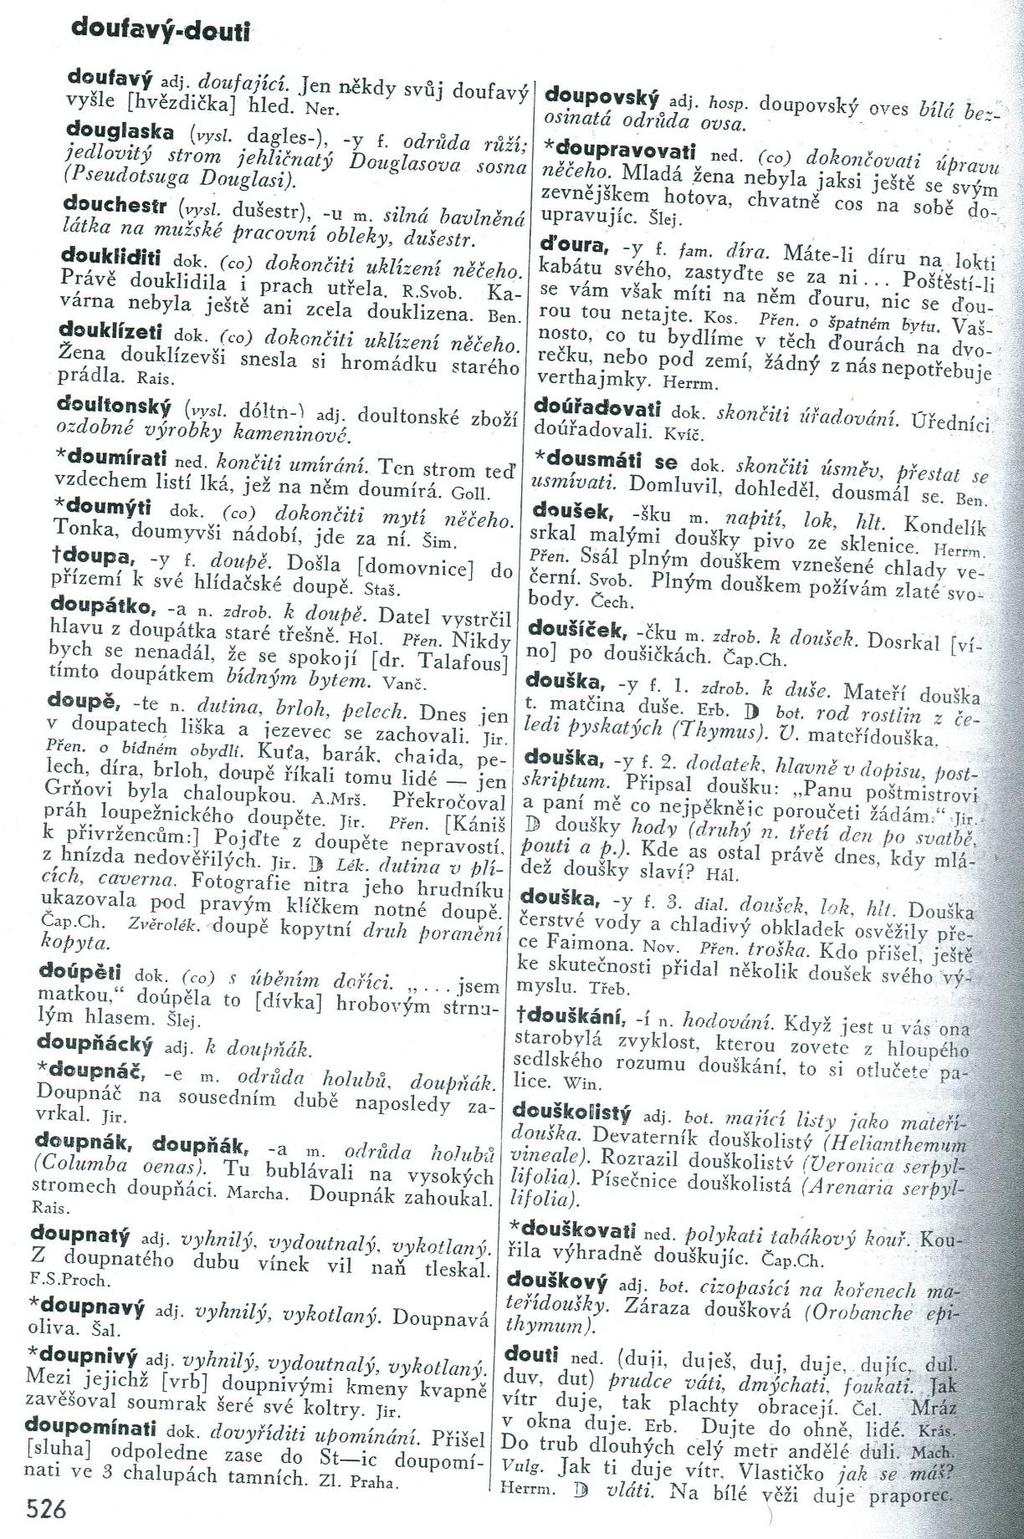 Anlage 1: Beispielseite aus dem Handwörterbuch der tschechischen